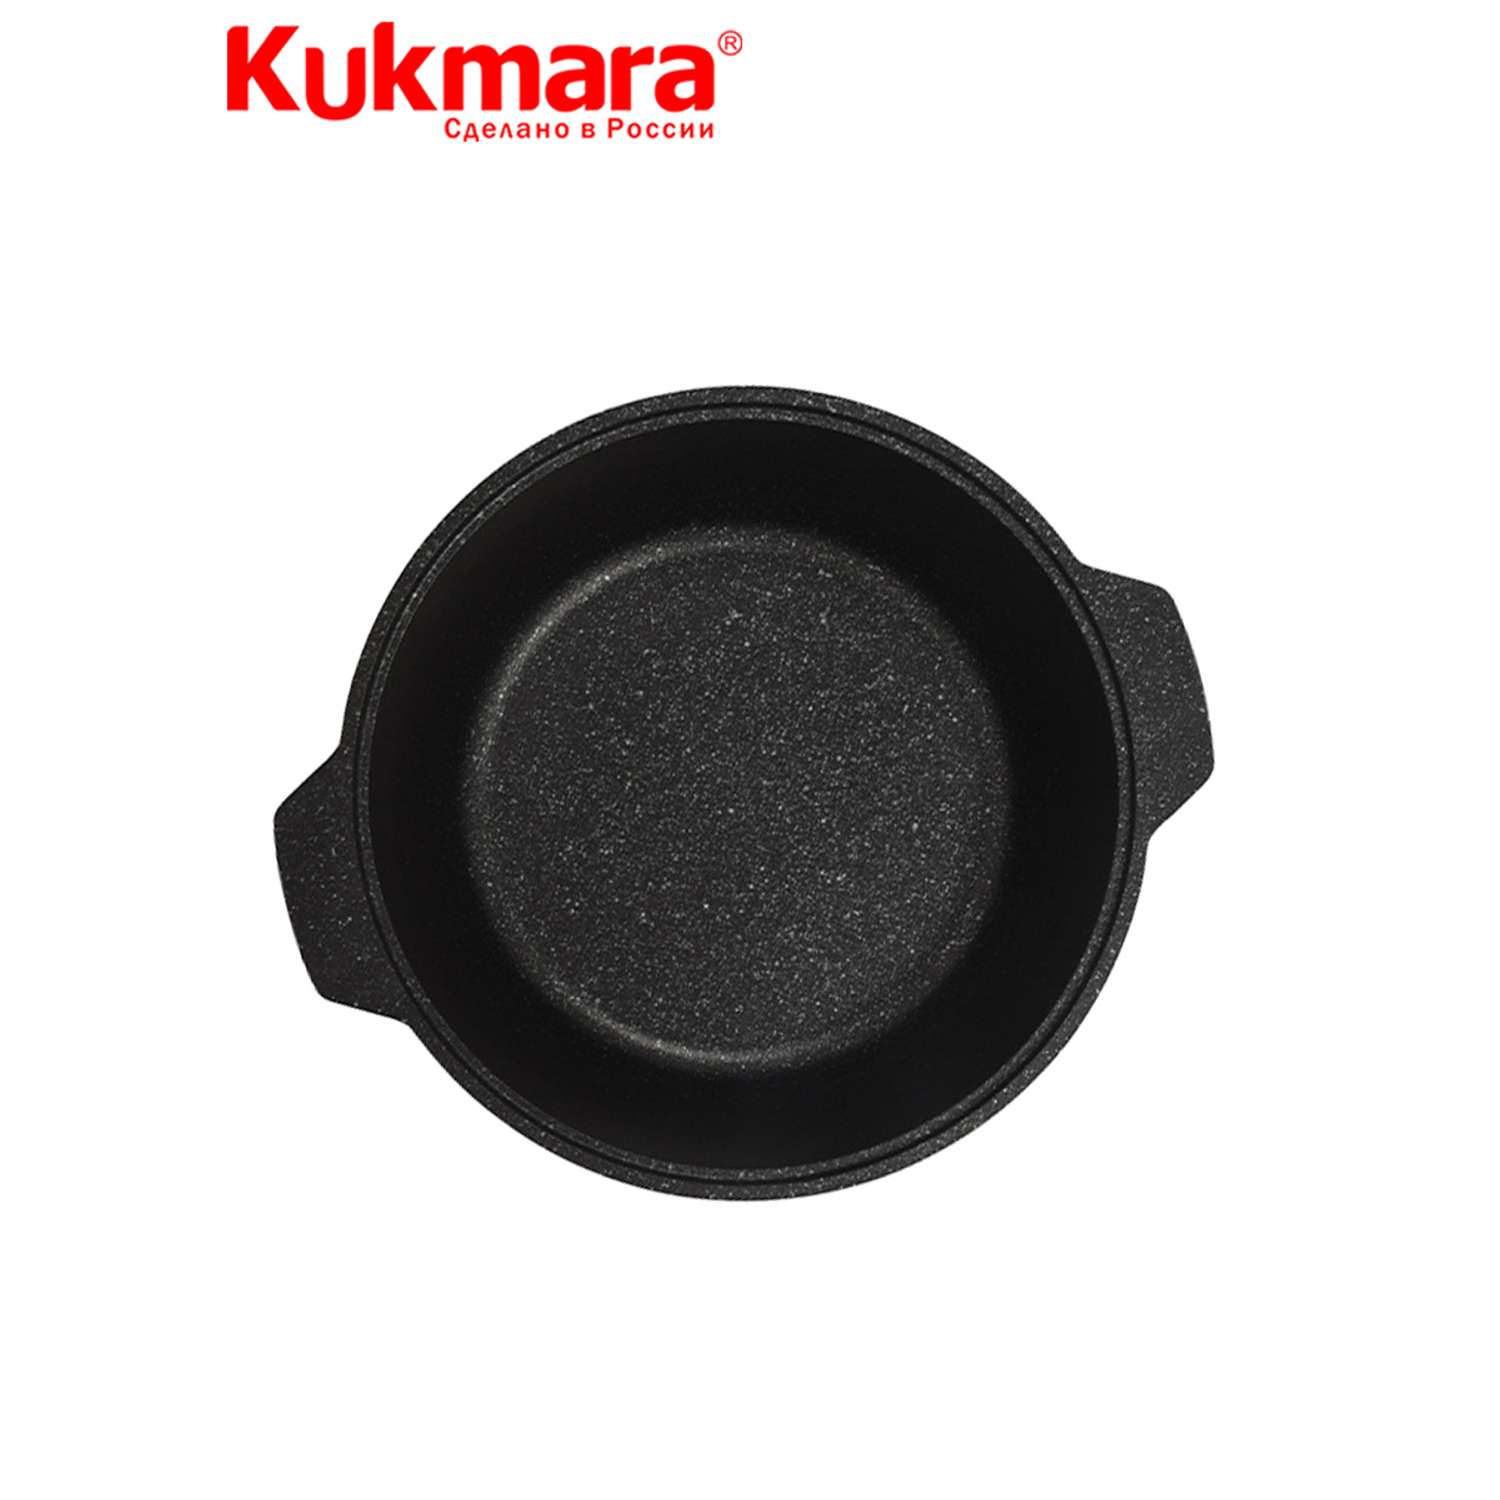 Кастрюля Kukmara жаровня антипригарное покрытие литая 4.0л стеклянная крышка Темный мрамор жмт42а - фото 5